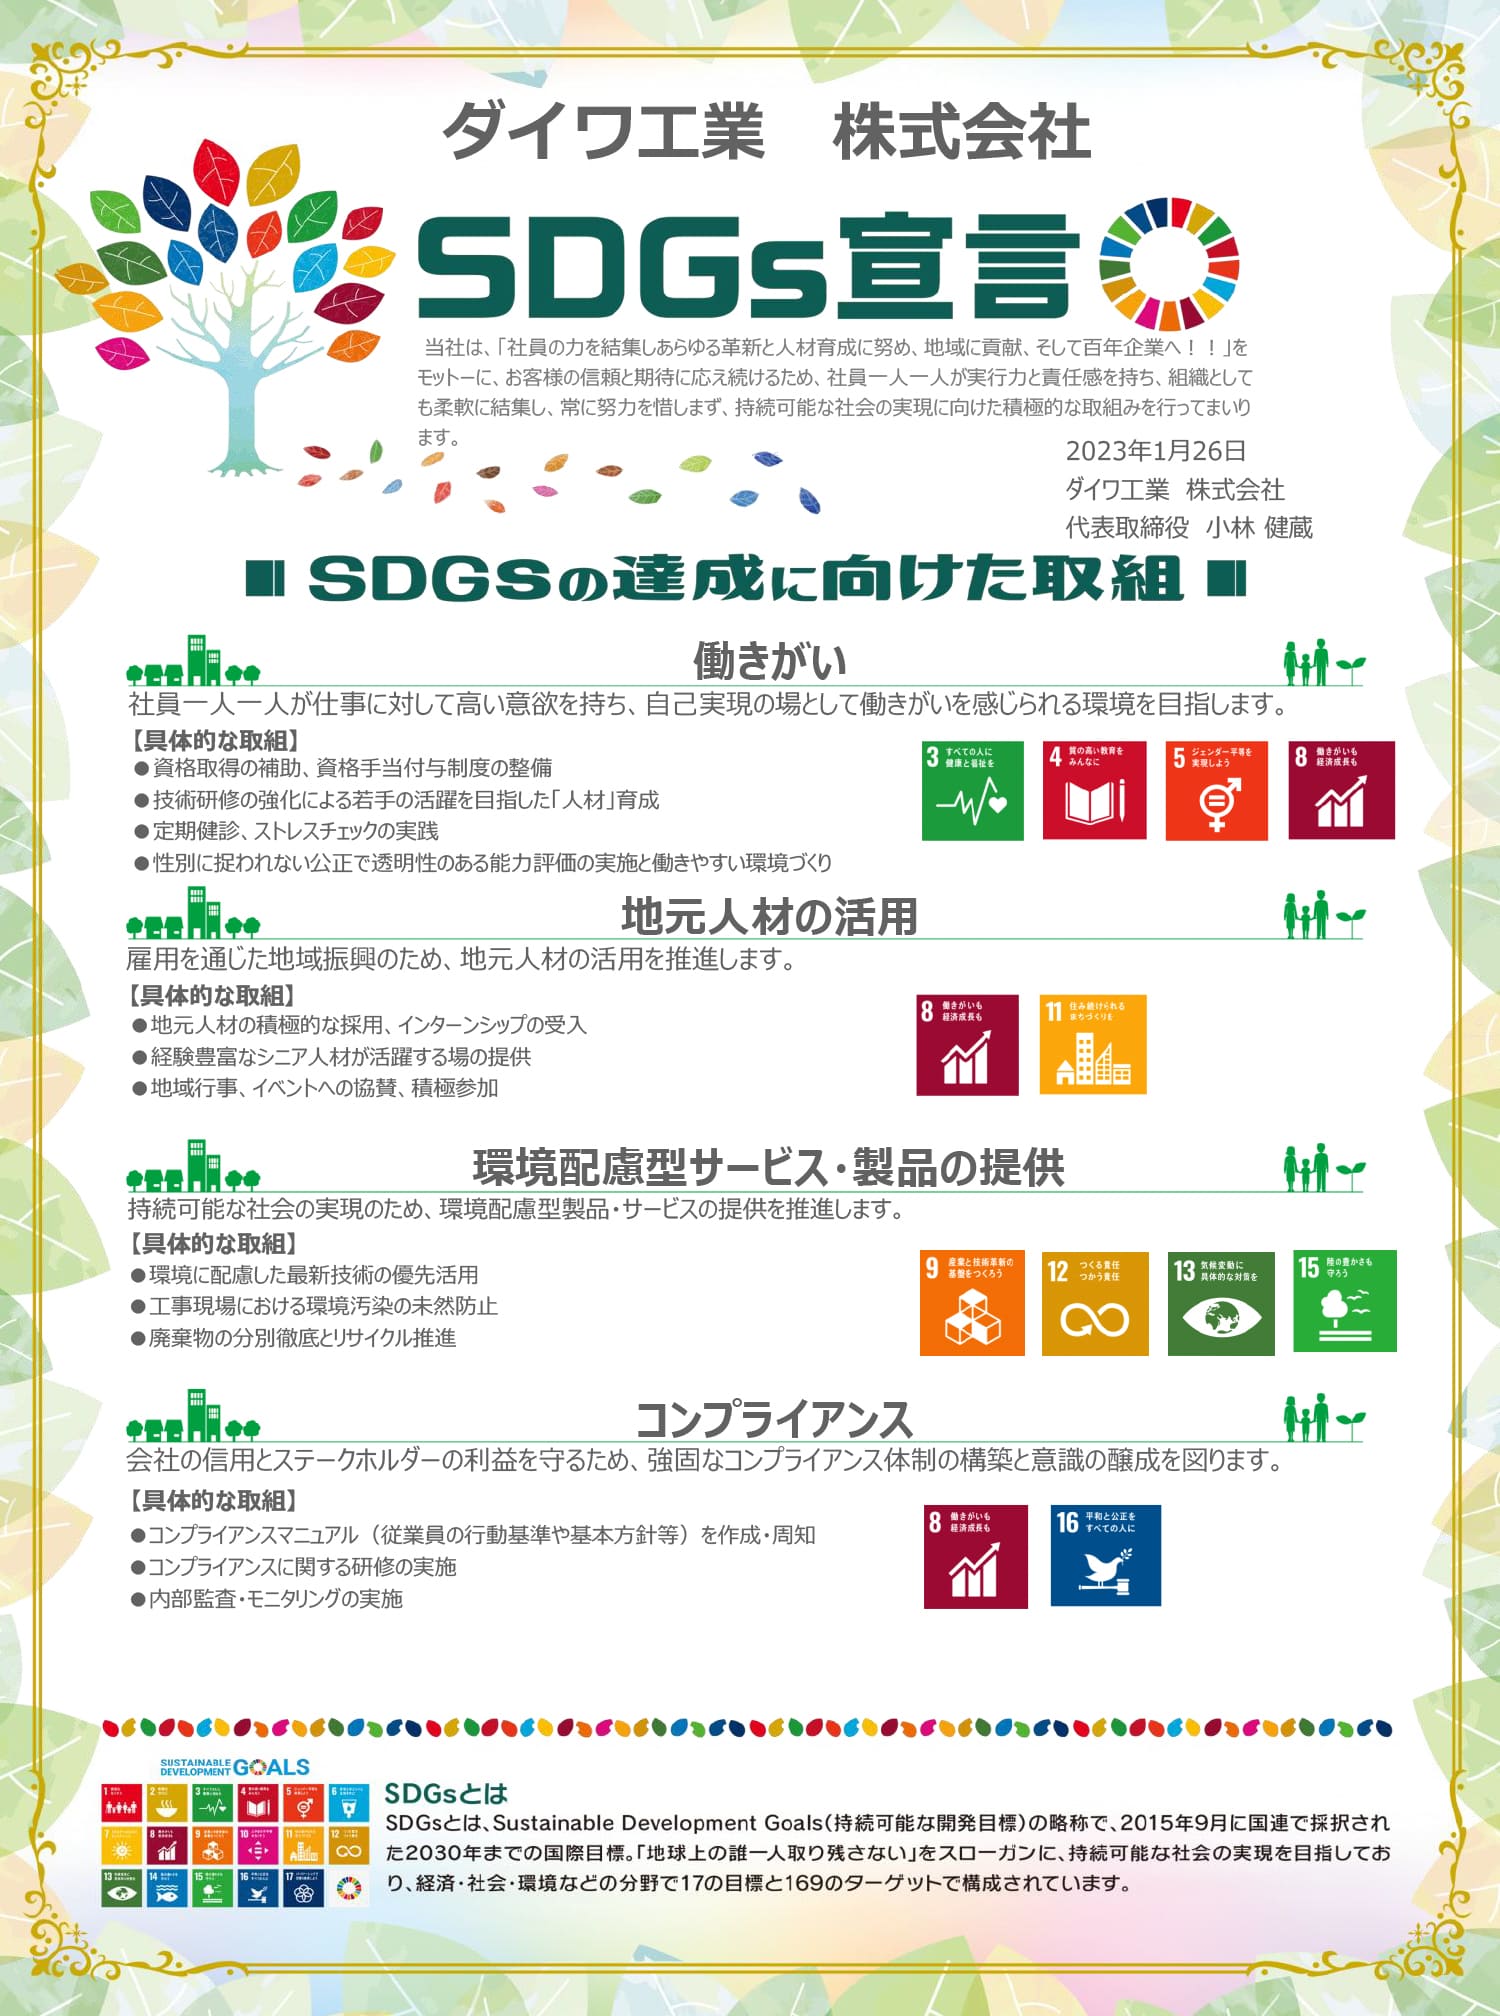 ダイワ工業の「SDGs宣言」